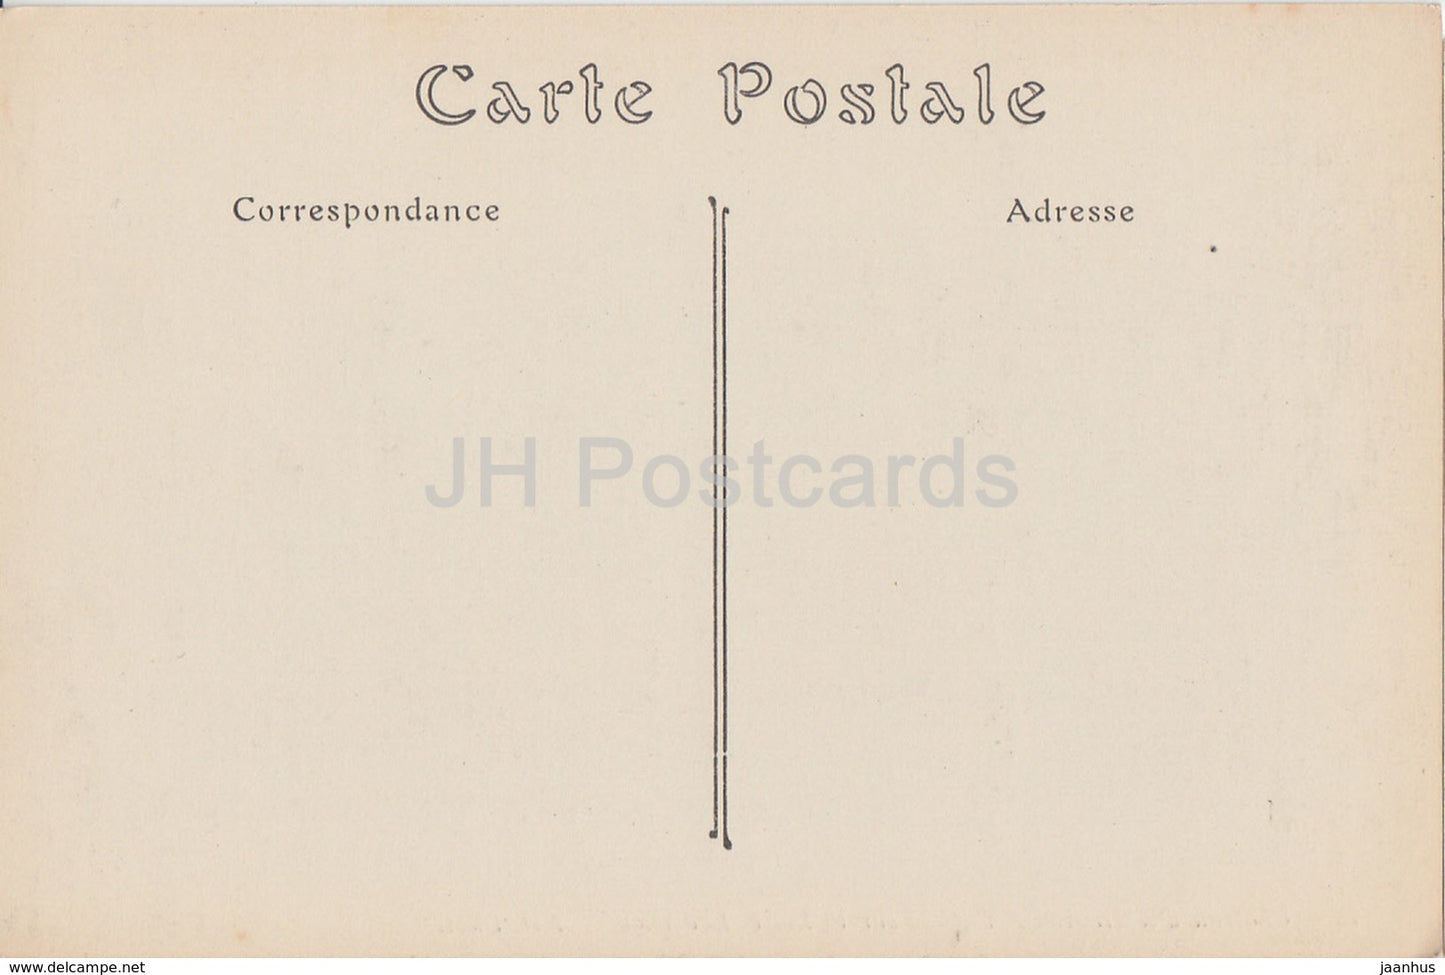 Château d'Amboise - Façade sur la Loire - Lucarnes - château - 78 - carte postale ancienne - France - inutilisée